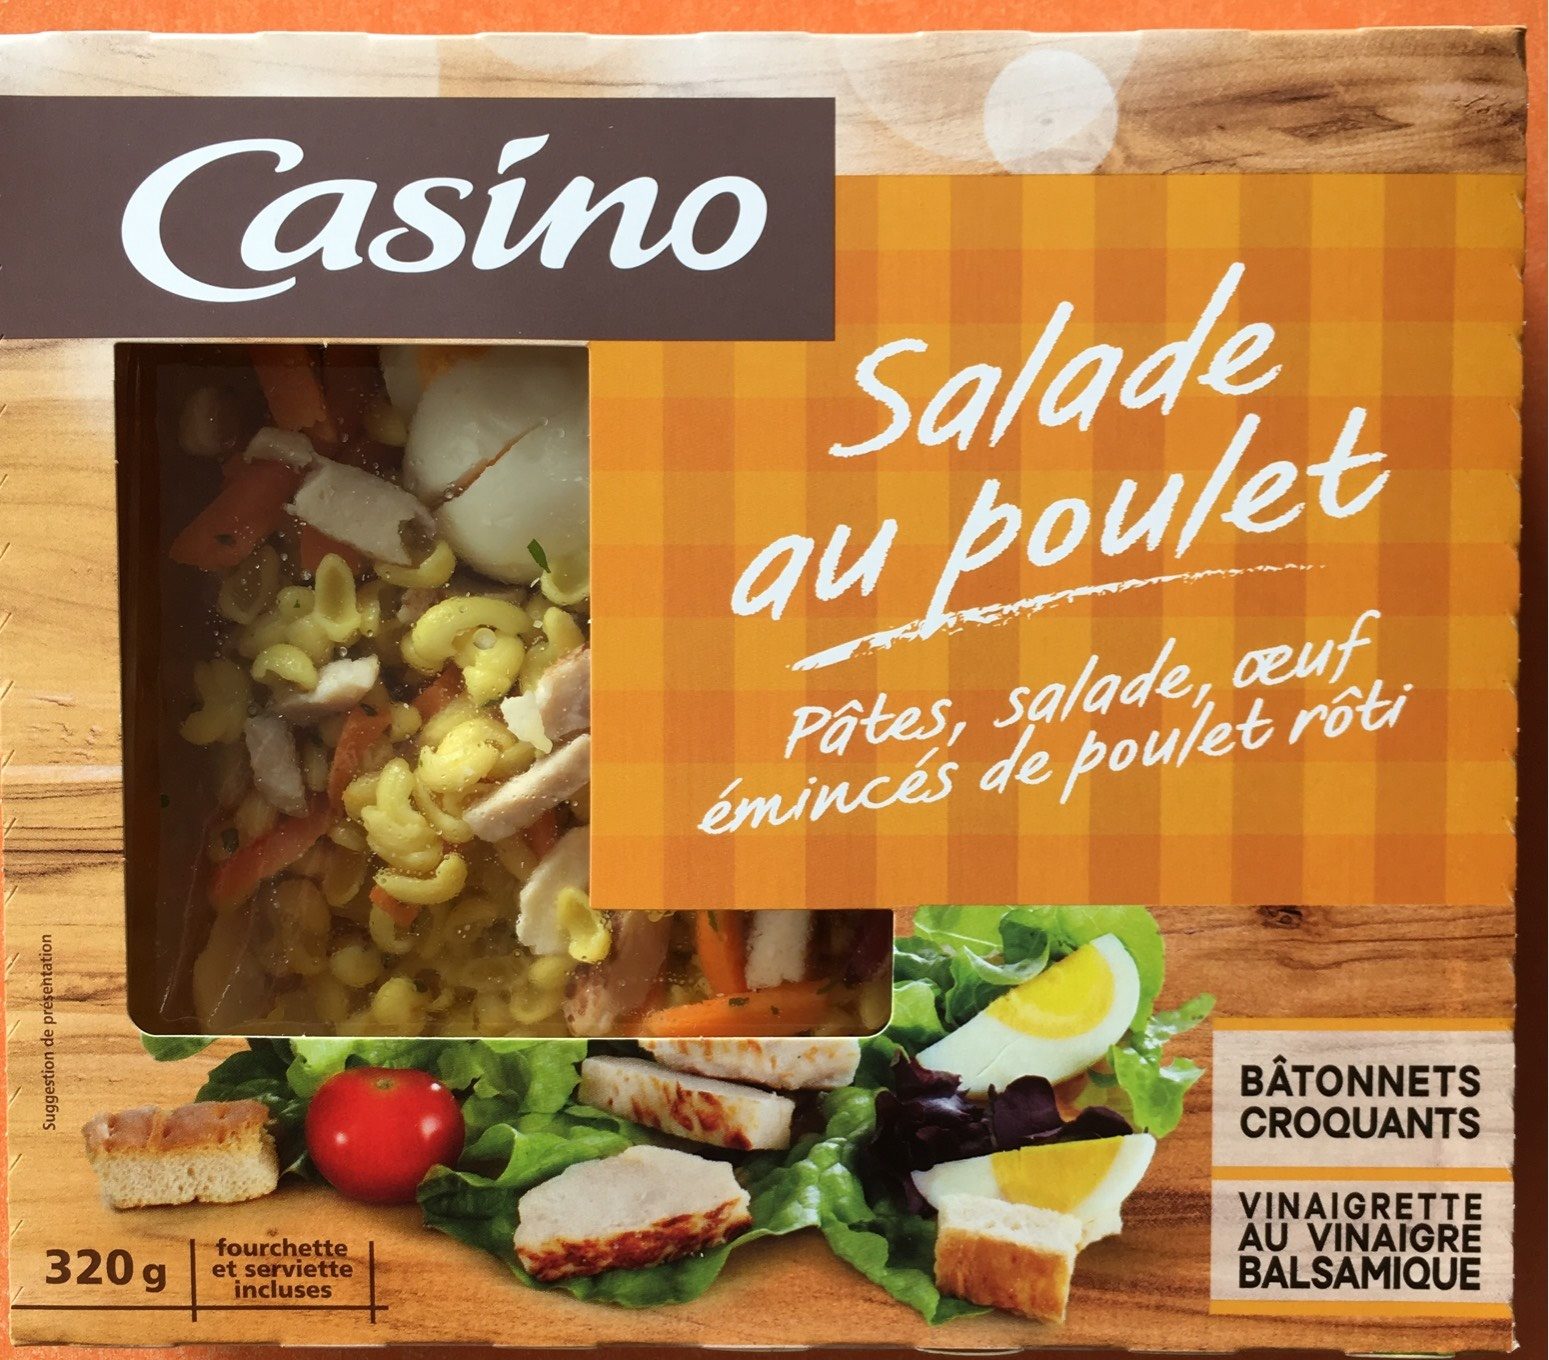 Salade au poulet : pâtes, salade, œuf,émincés de poulet rôti - نتاج - fr